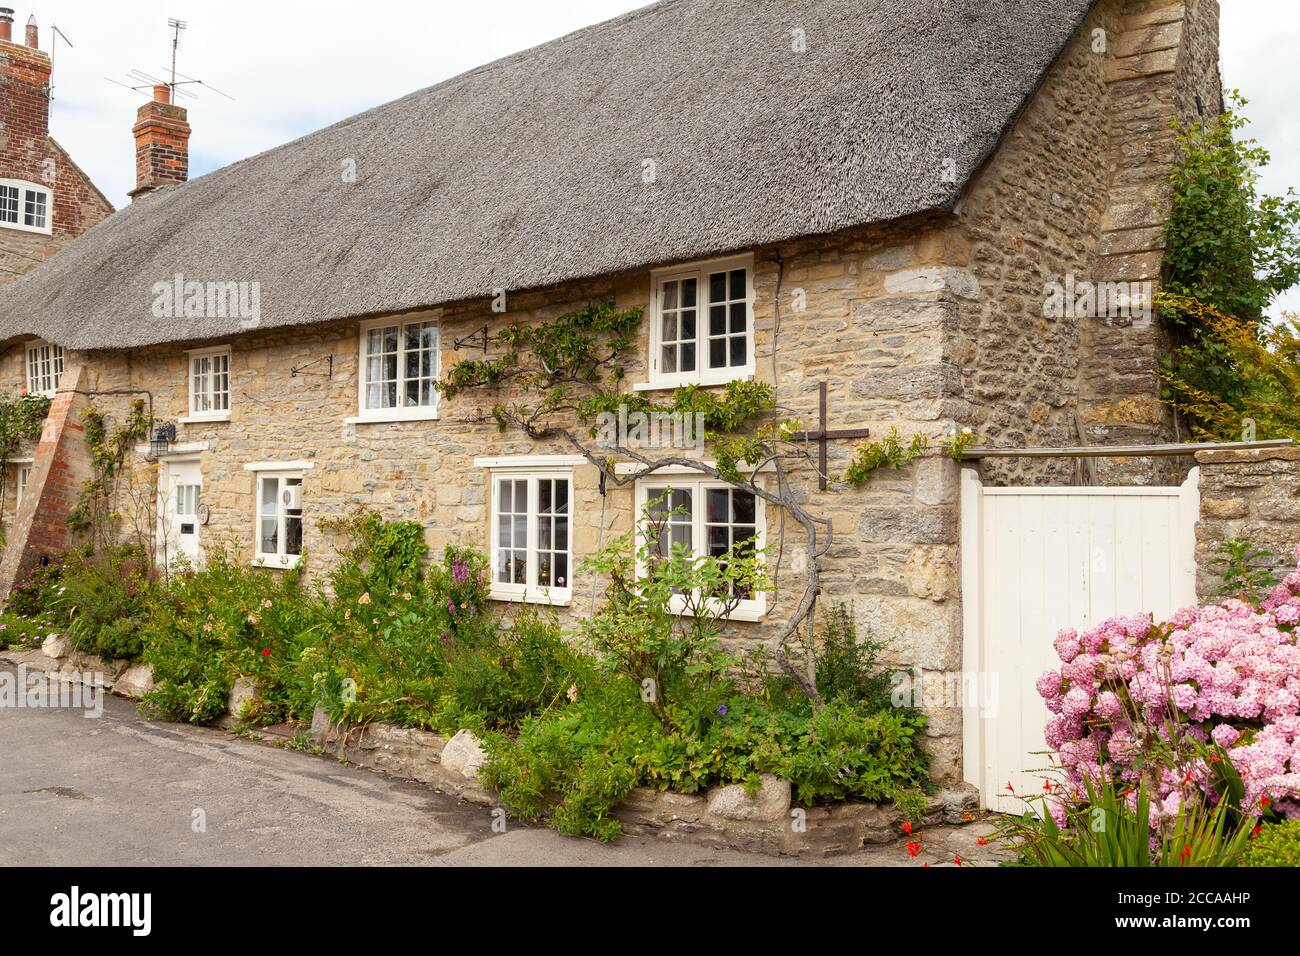 Maisons traditionnelles de chaume dans le beau village de Burton Bradstock, Dorset, Angleterre. Banque D'Images